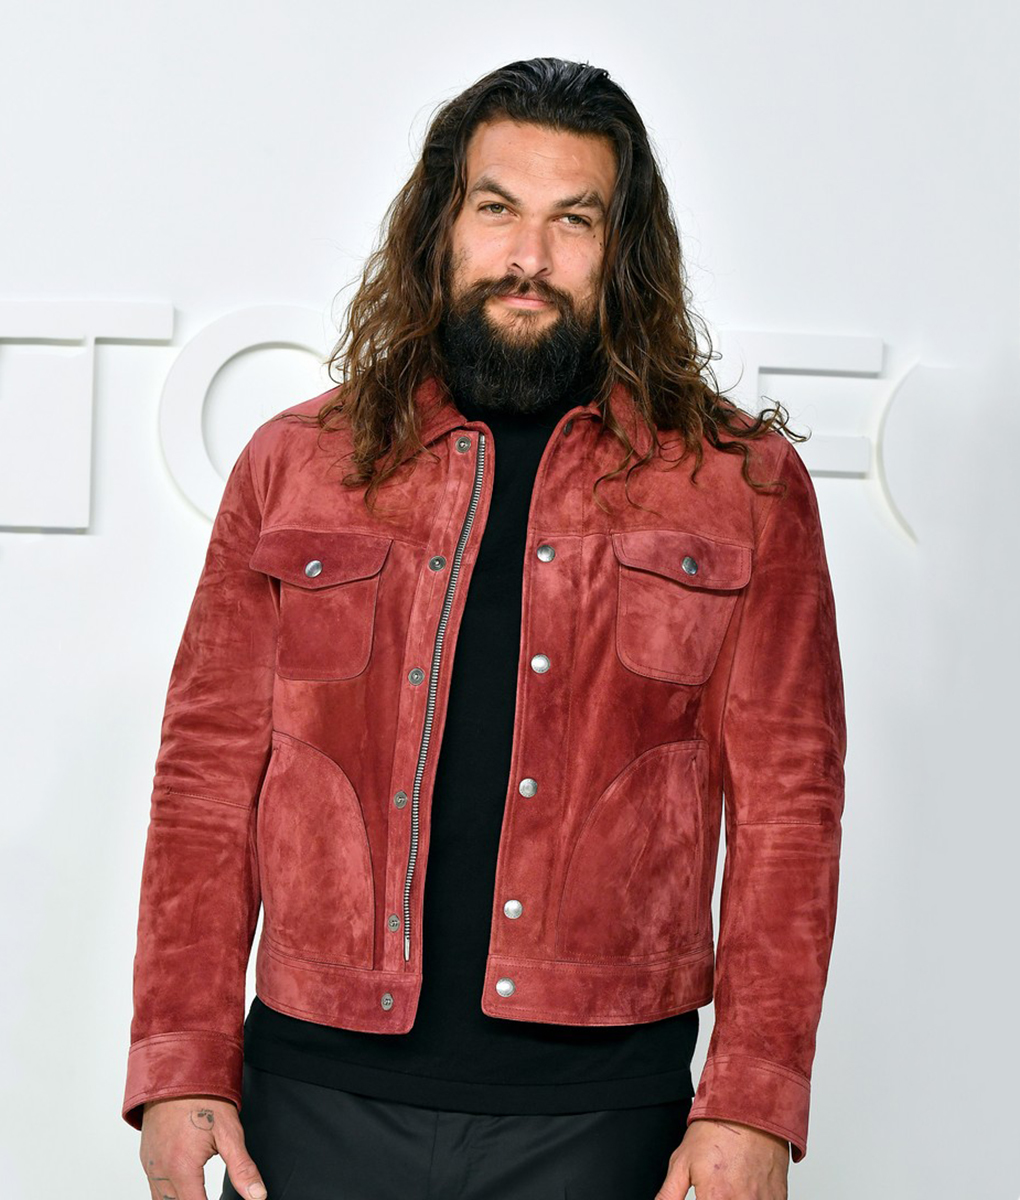 Jason Momoa Leather Jacket | Jason Momoa Suede Red Jacket